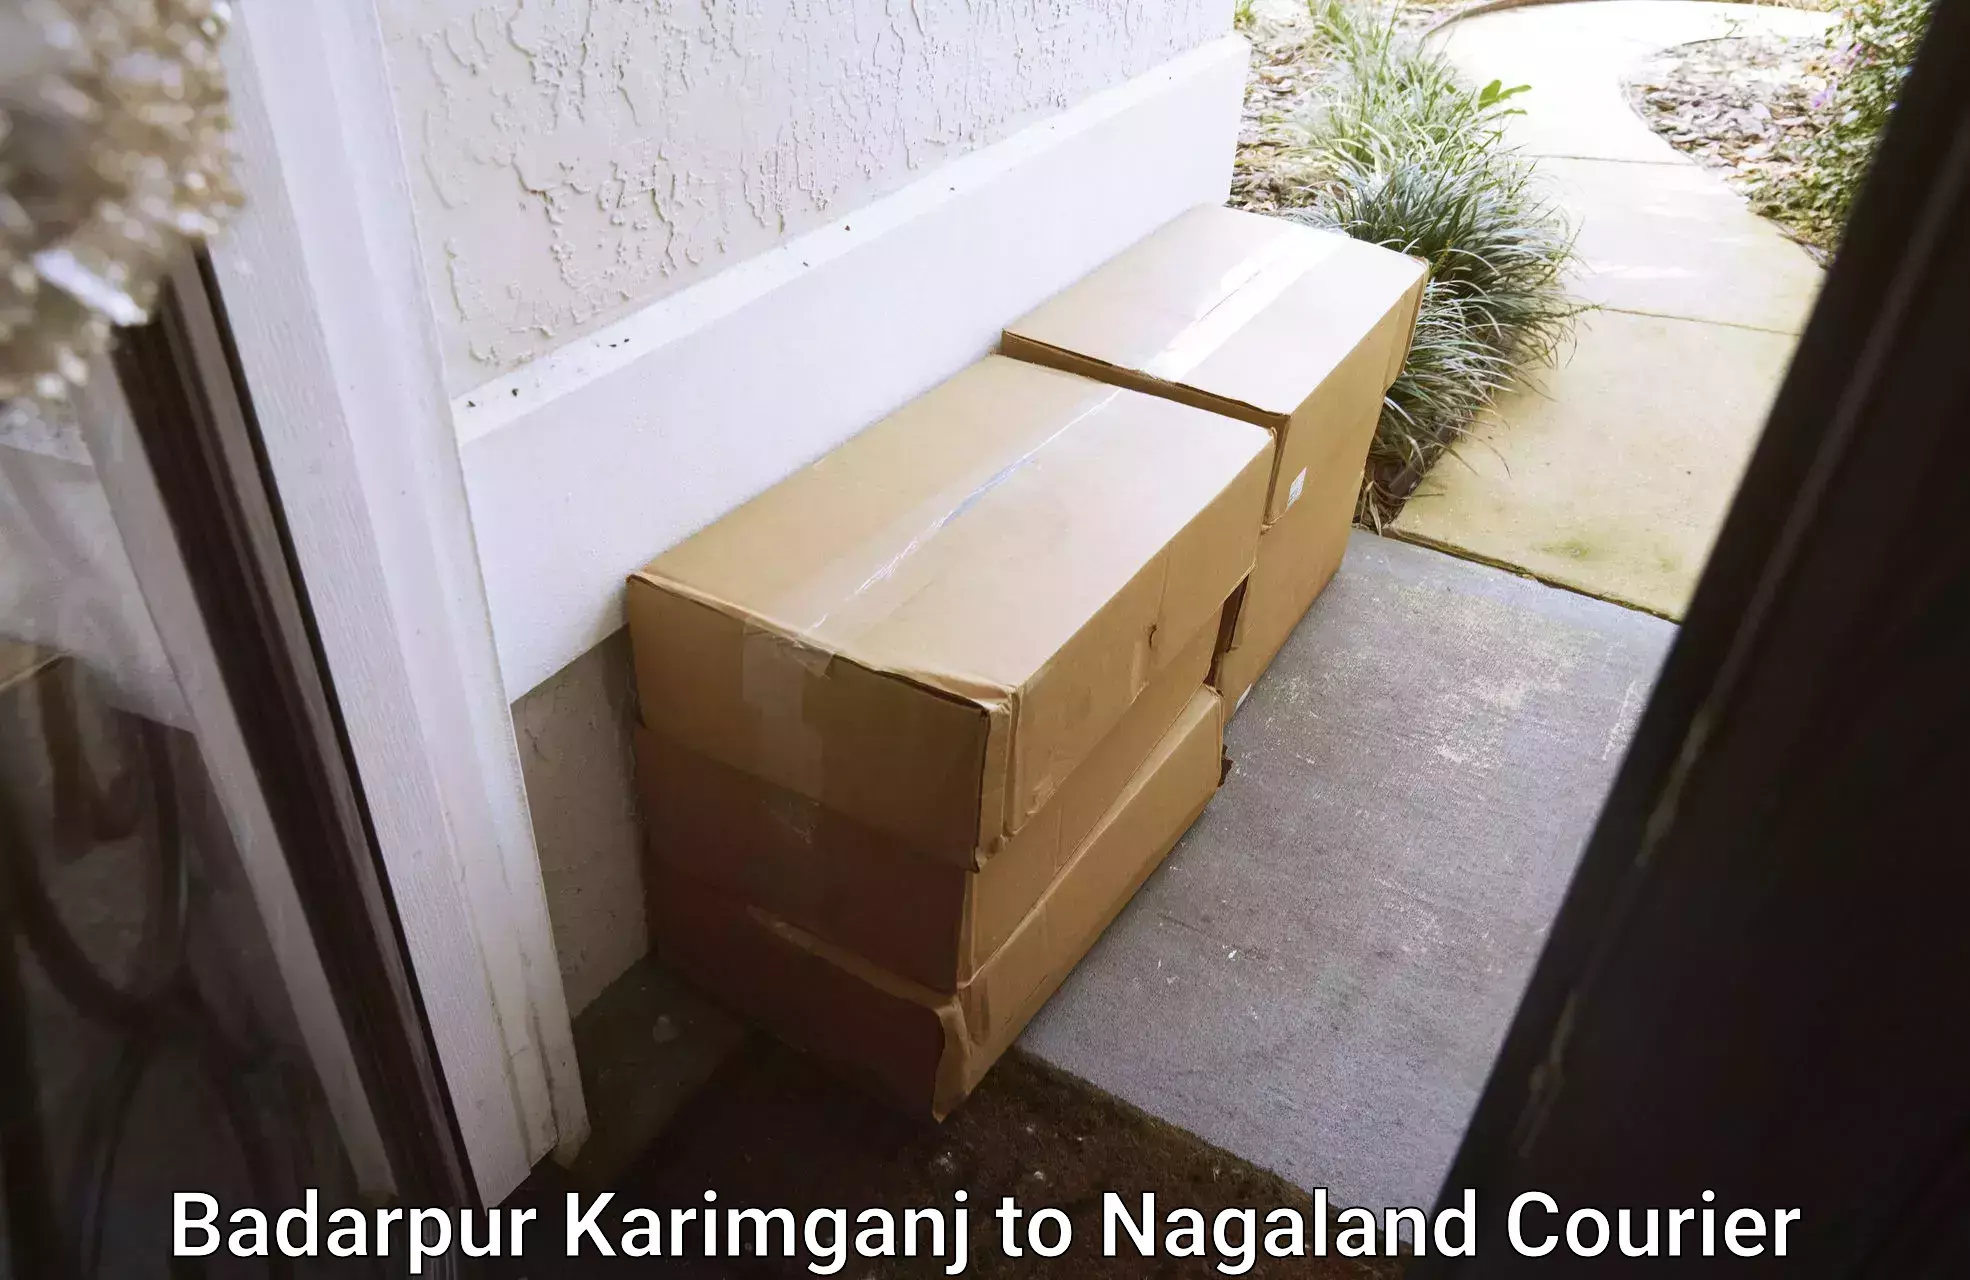 Affordable parcel service Badarpur Karimganj to Nagaland